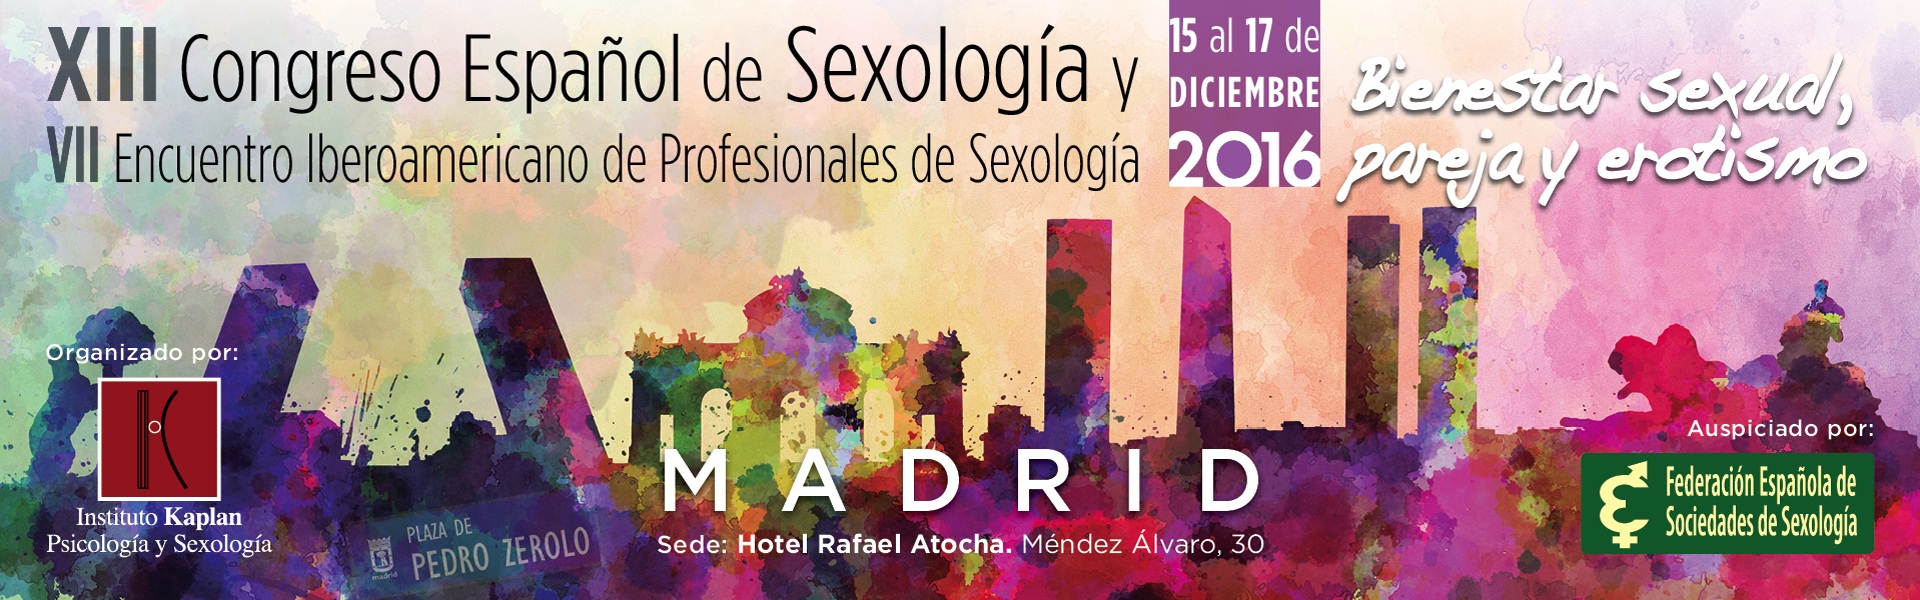 Congreso de Sexología 2016, organizado por la FESS